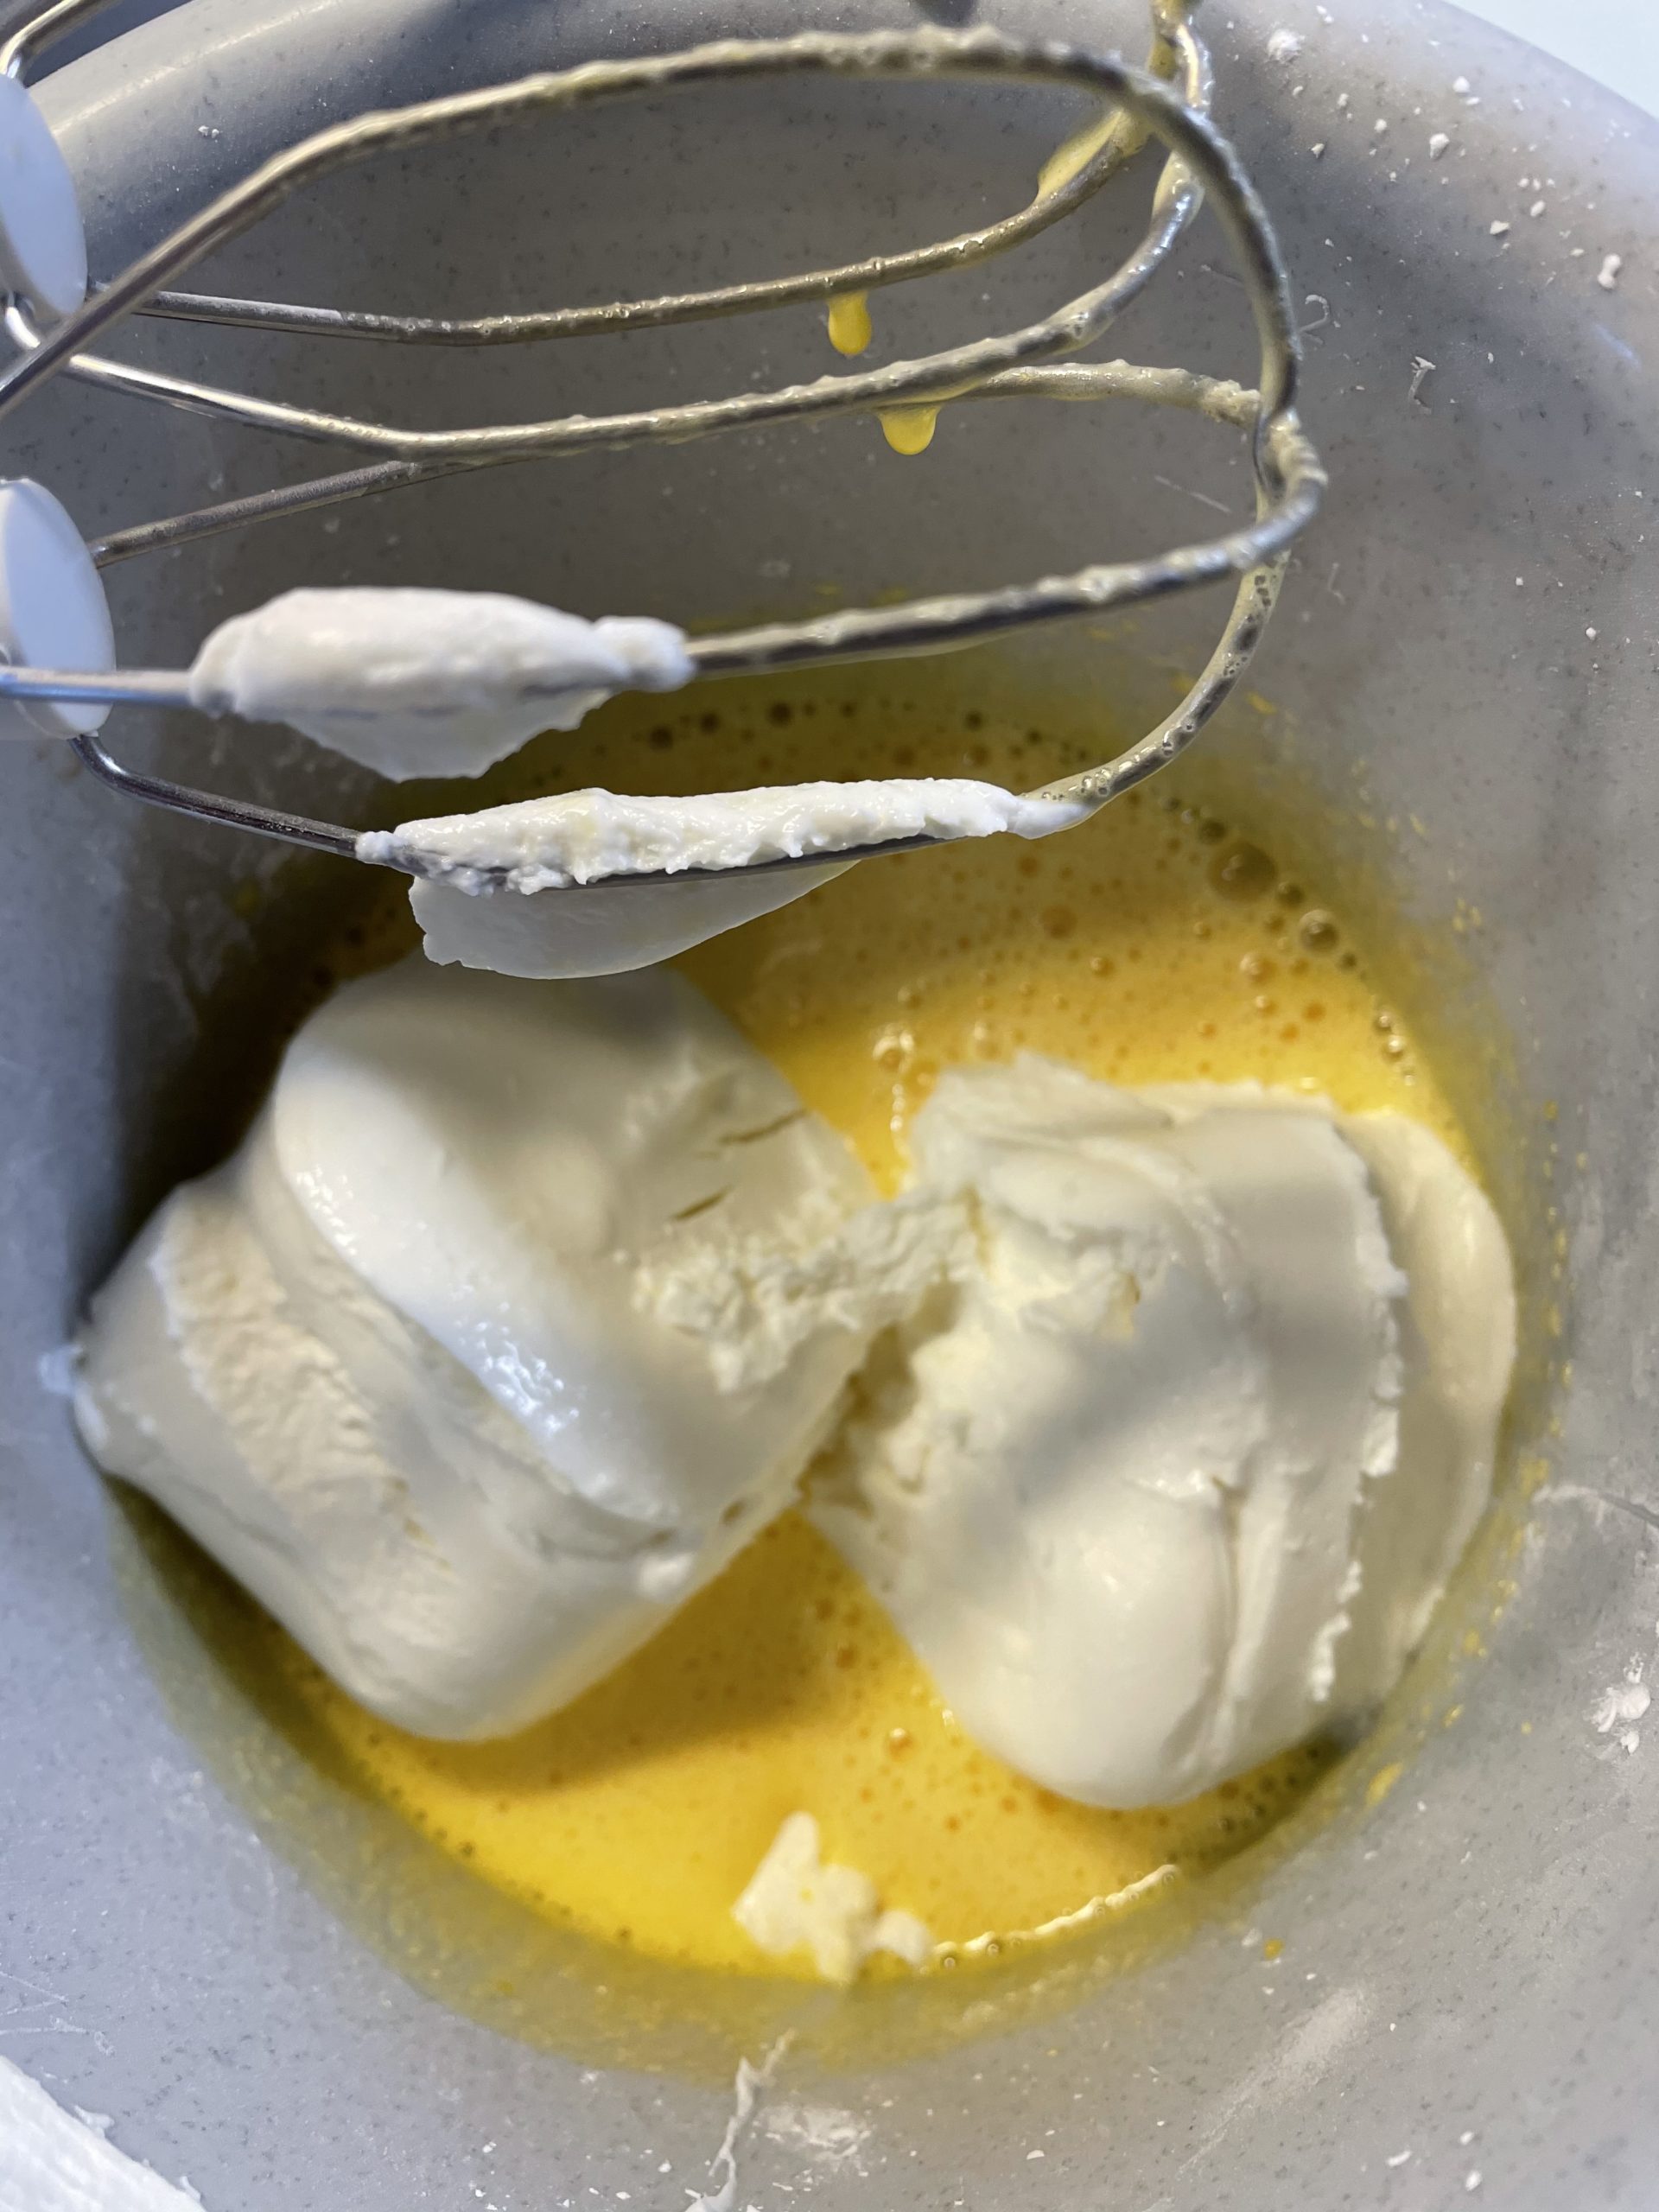 Bild zum Schritt 17 für das Bastel- und DIY-Abenteuer für Kinder: 'Bereitet nun die Käsefüllung zu:  Schlagt dafür zwei Eier...'